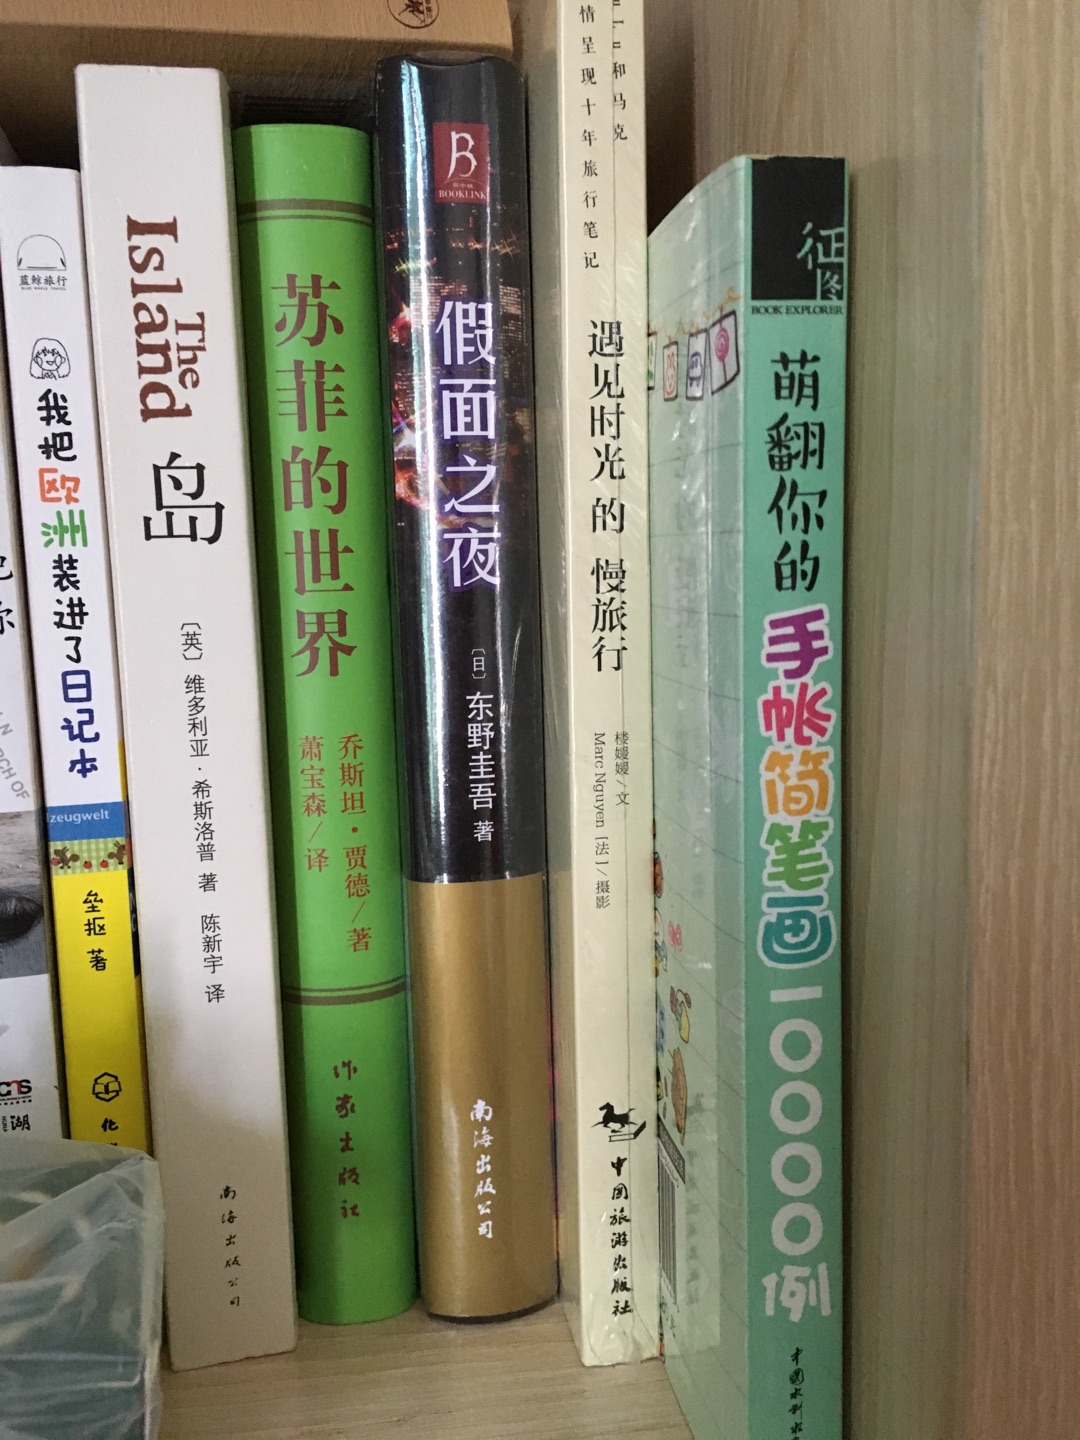 很喜欢东野圭吾的书，买了好多本他写的书，感觉写的很精彩